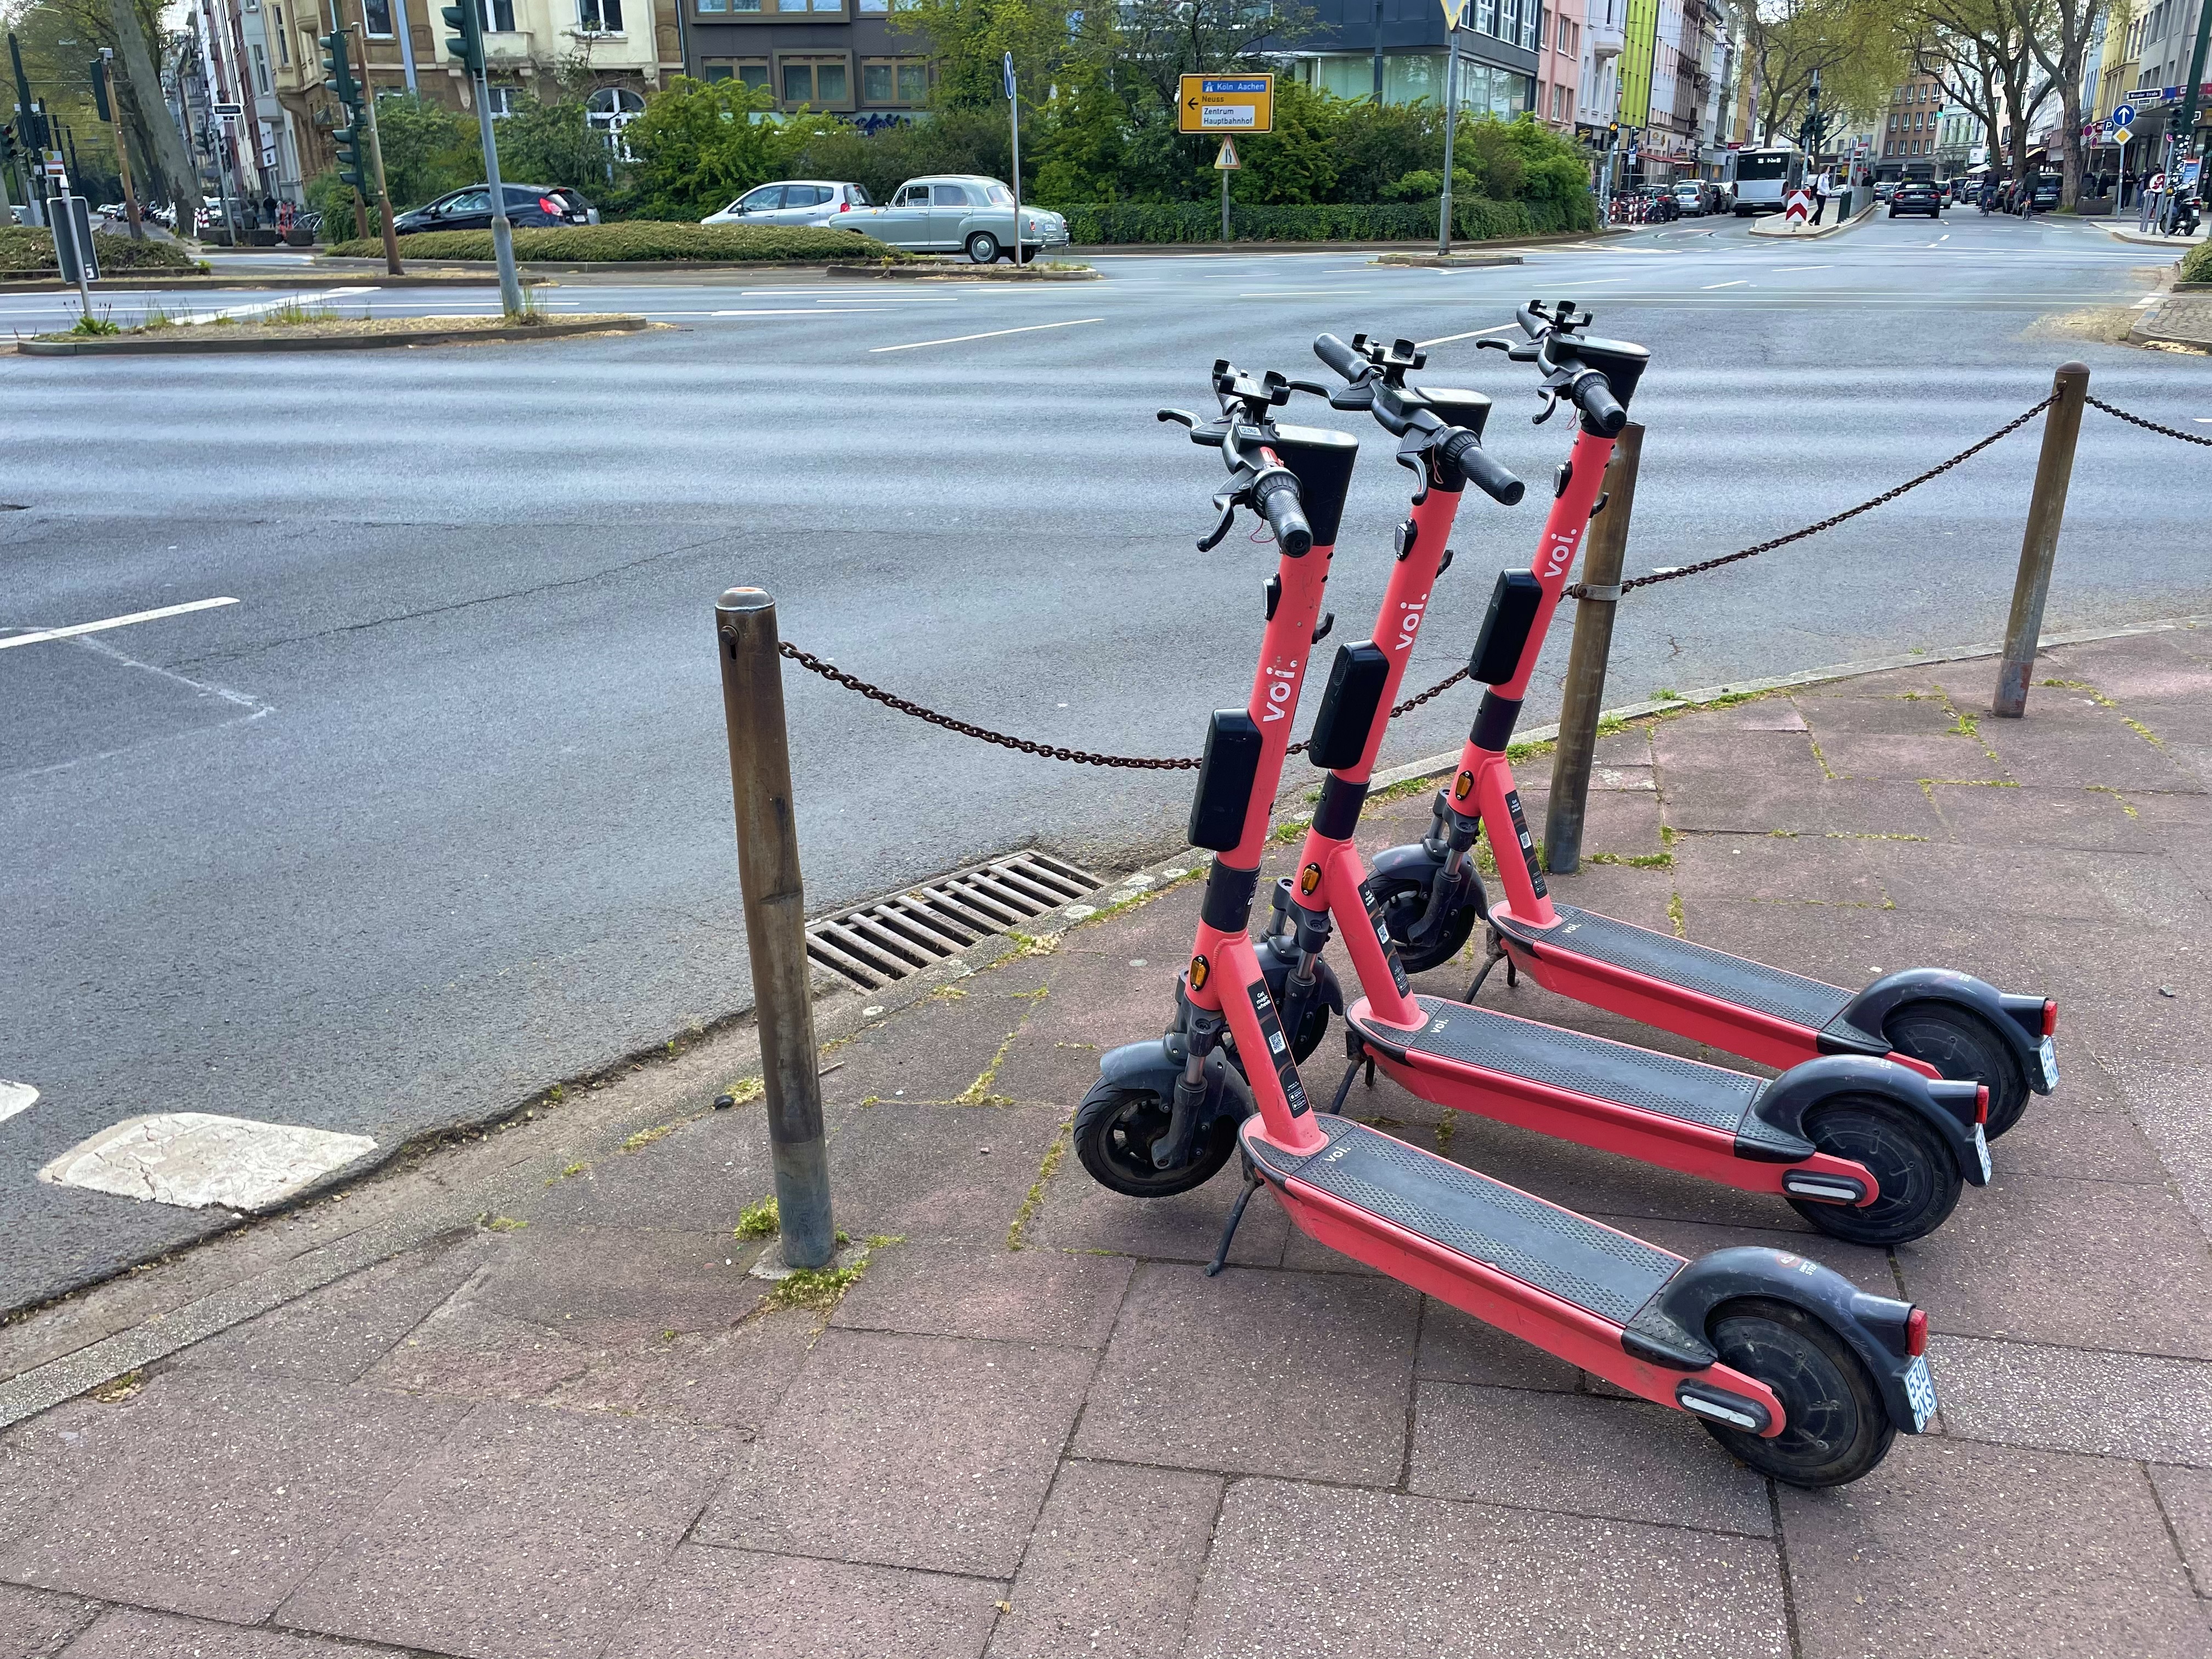 Zu sehen sind drei E-Scooter geparkt auf dem Bürgersteig an einer Hauptstraße. 